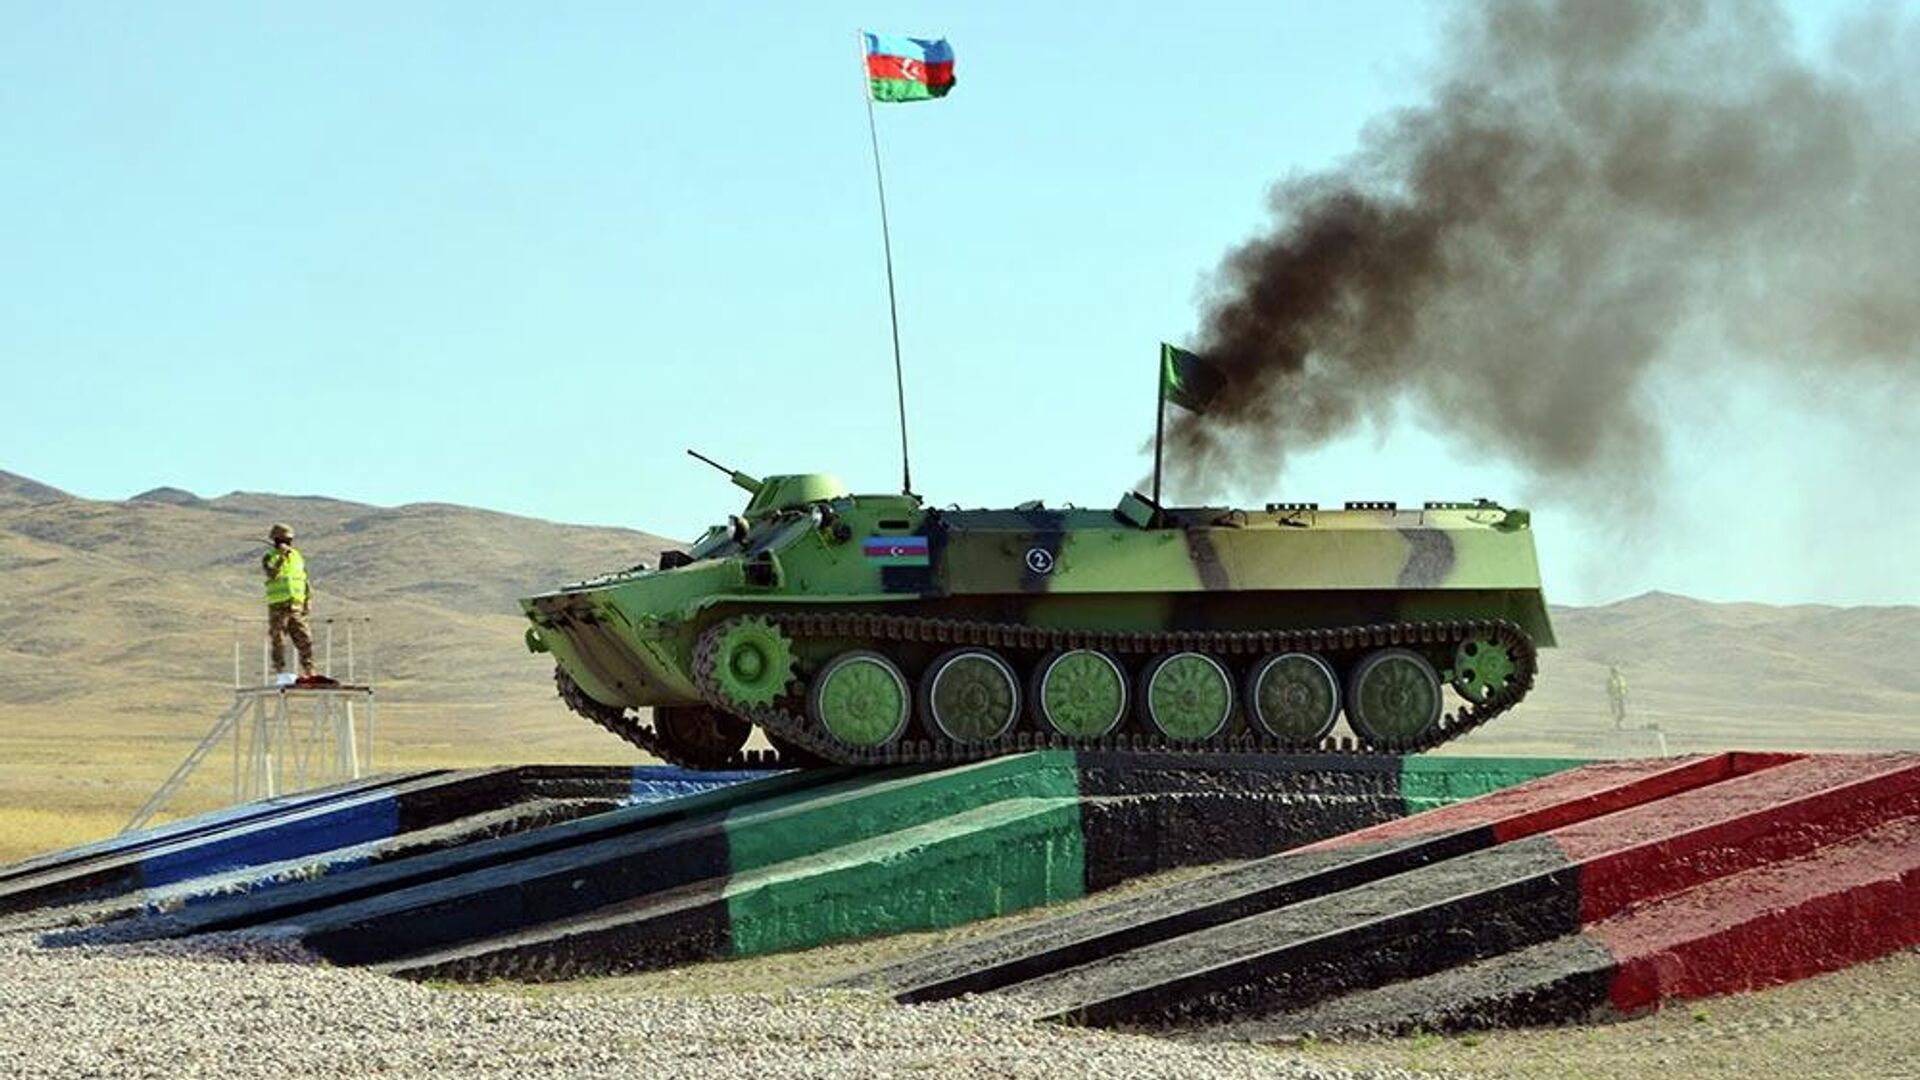 Состоялся последний этап конкурса Мастера артиллерийского огня АрМИ-2022 в Казахстане - Sputnik Азербайджан, 1920, 20.08.2022